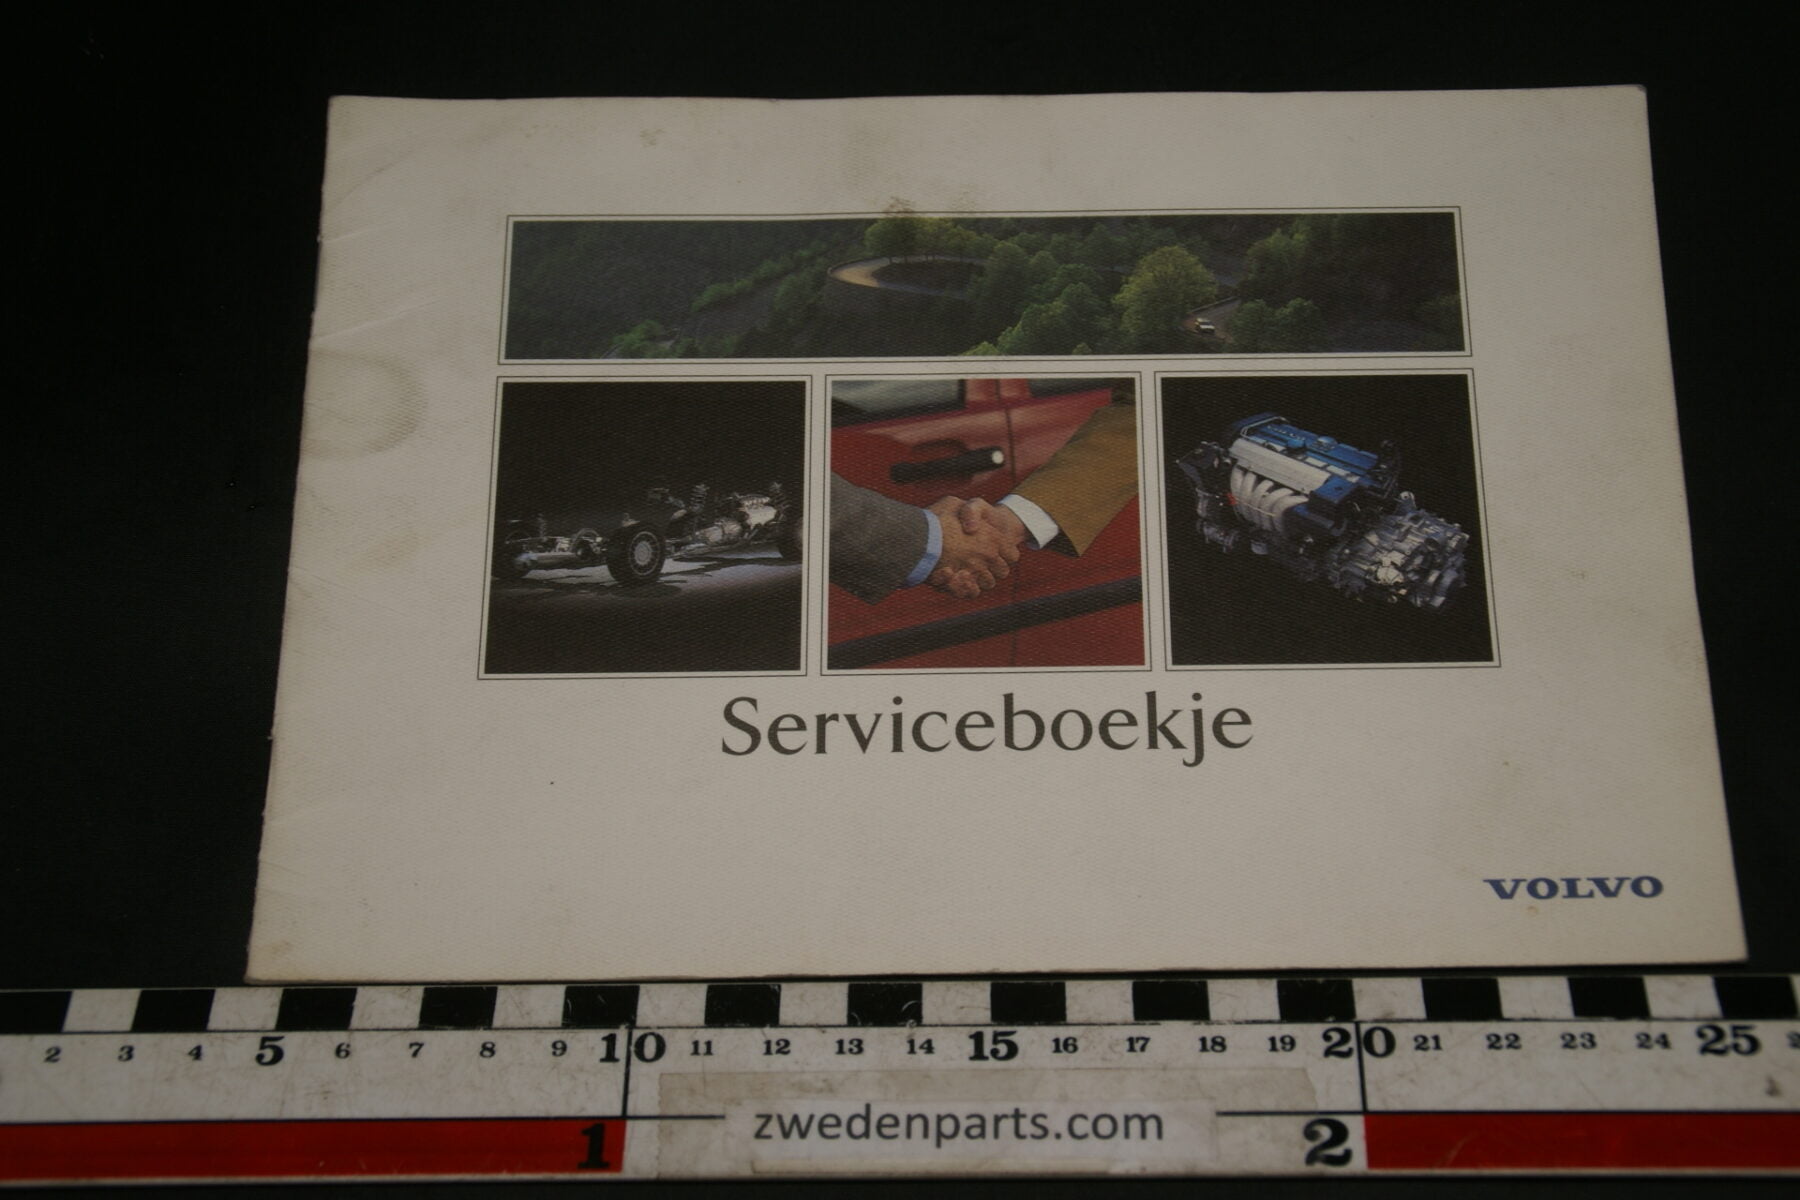 DSC02416 1994 Volvo serviceboekje TP86208.1